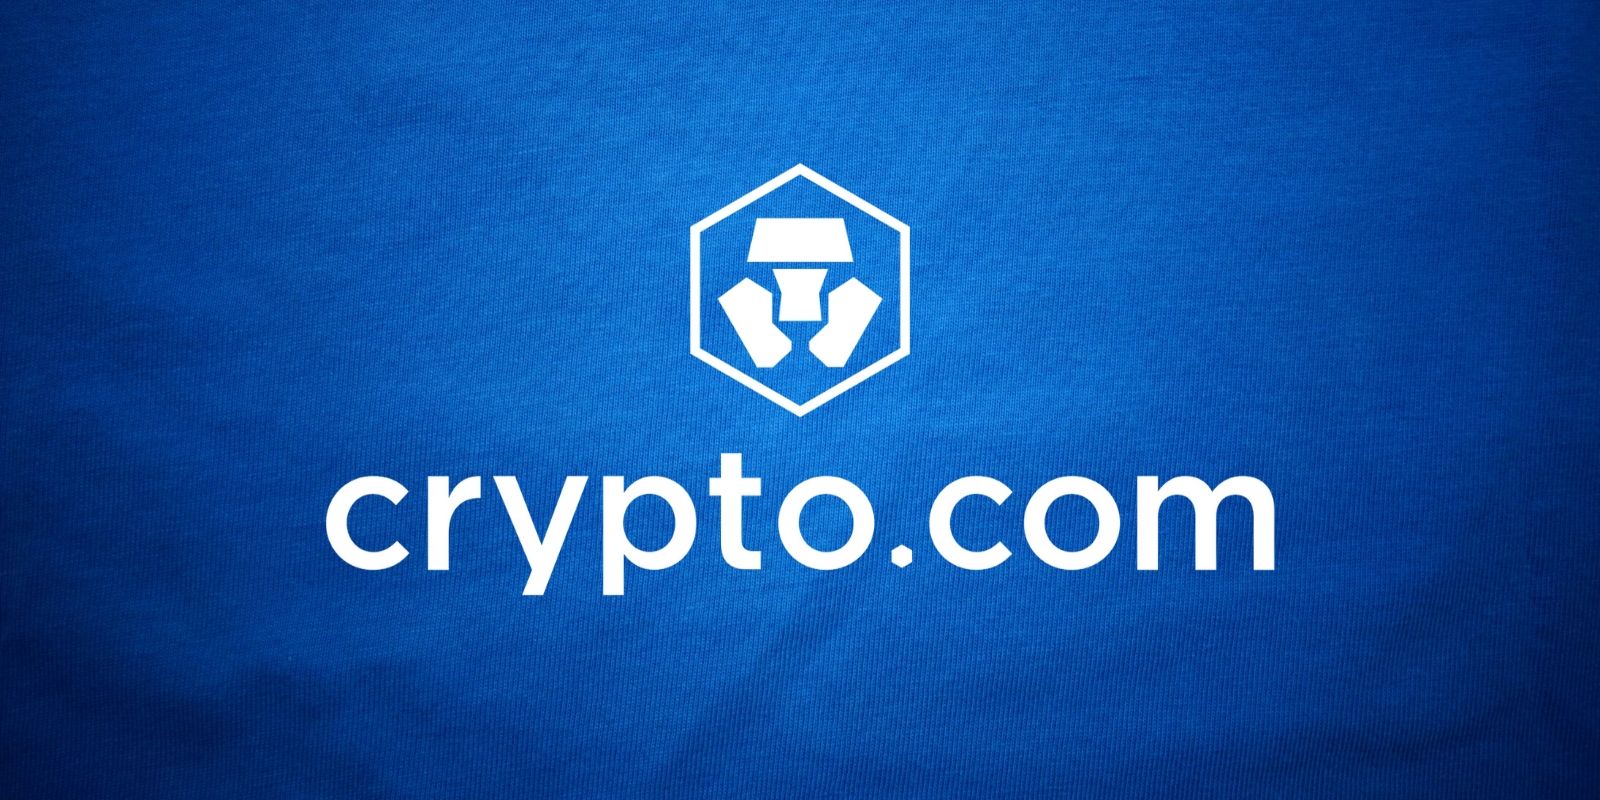 Crypto.com Crypto-monnaie en Chaque Wallet 31